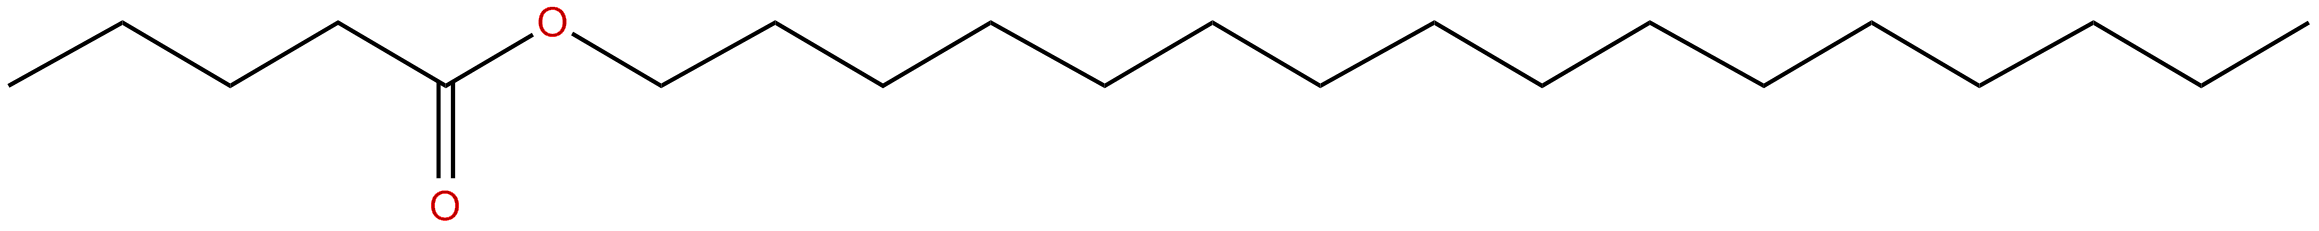 Image of hexadecyl pentanoate